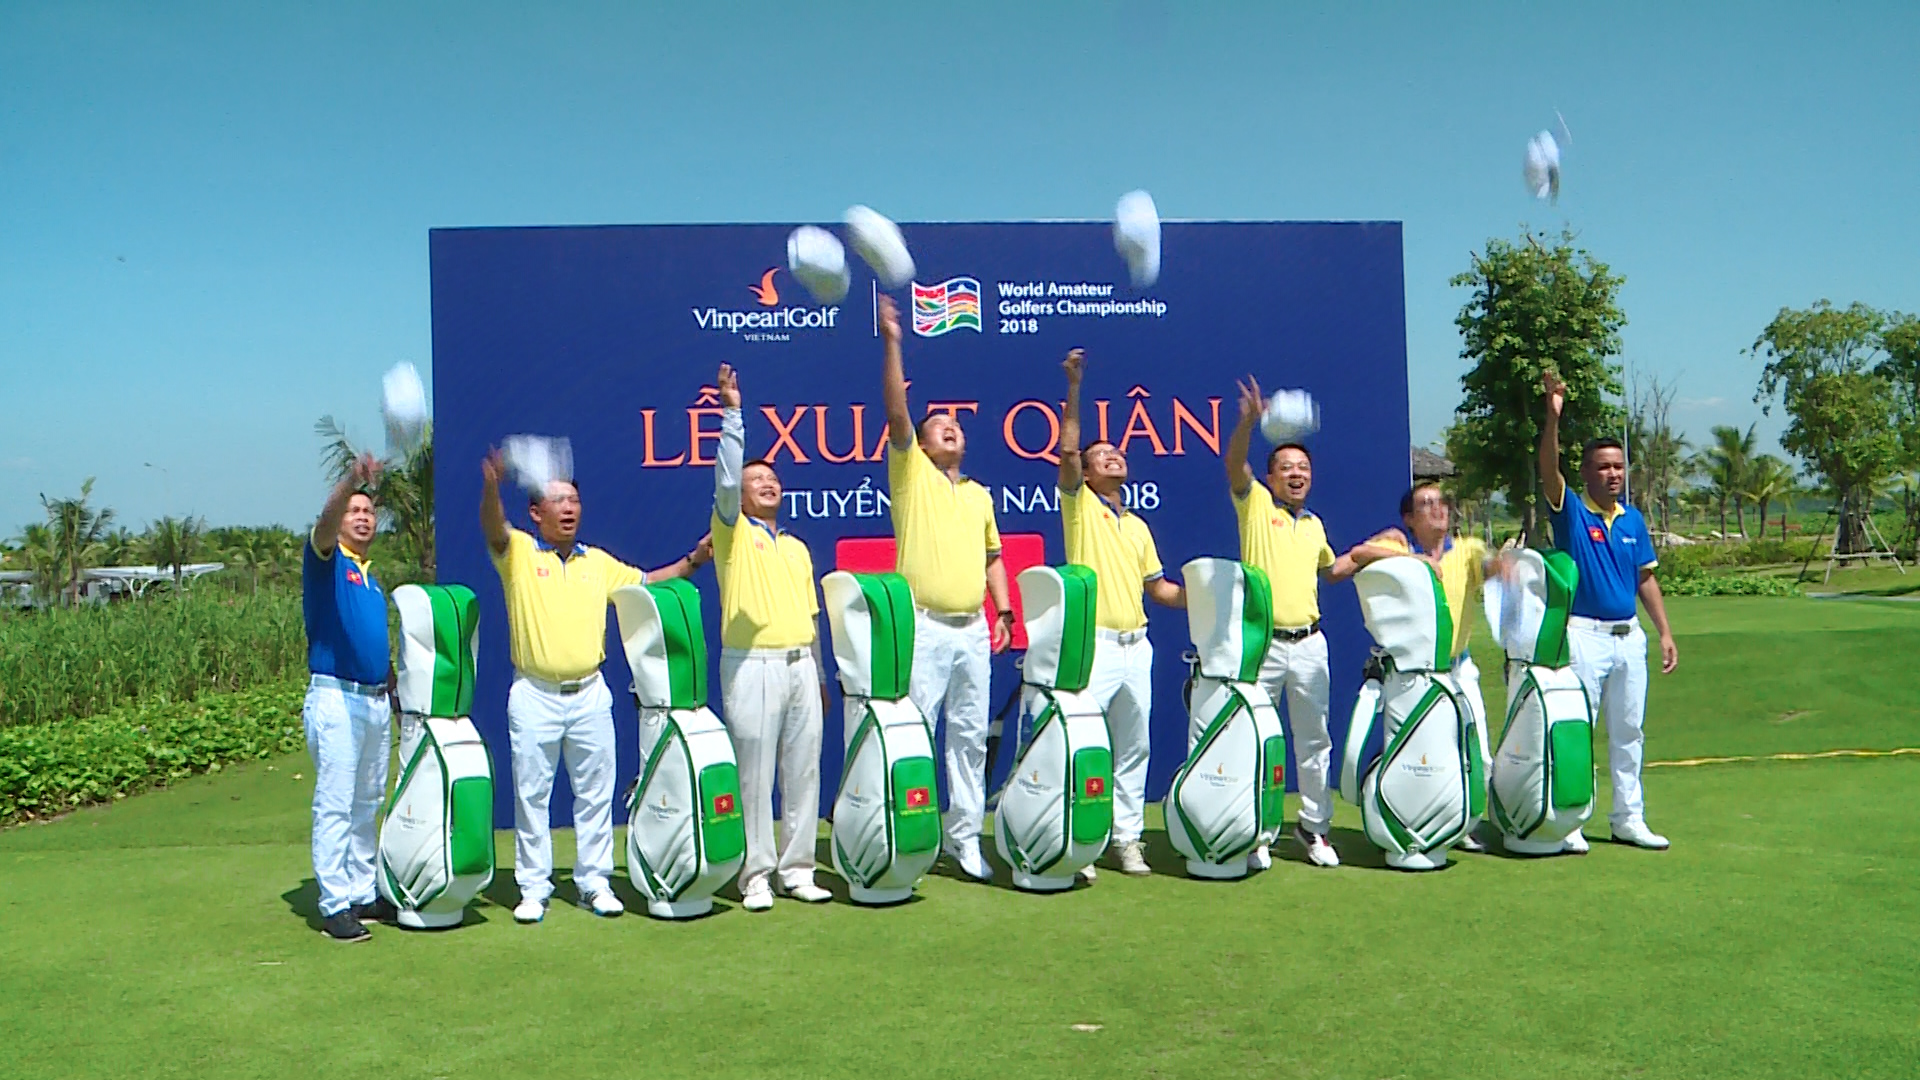 Lễ xuất quân của đội tuyển golf Việt Nam tham dự WAGC 2018